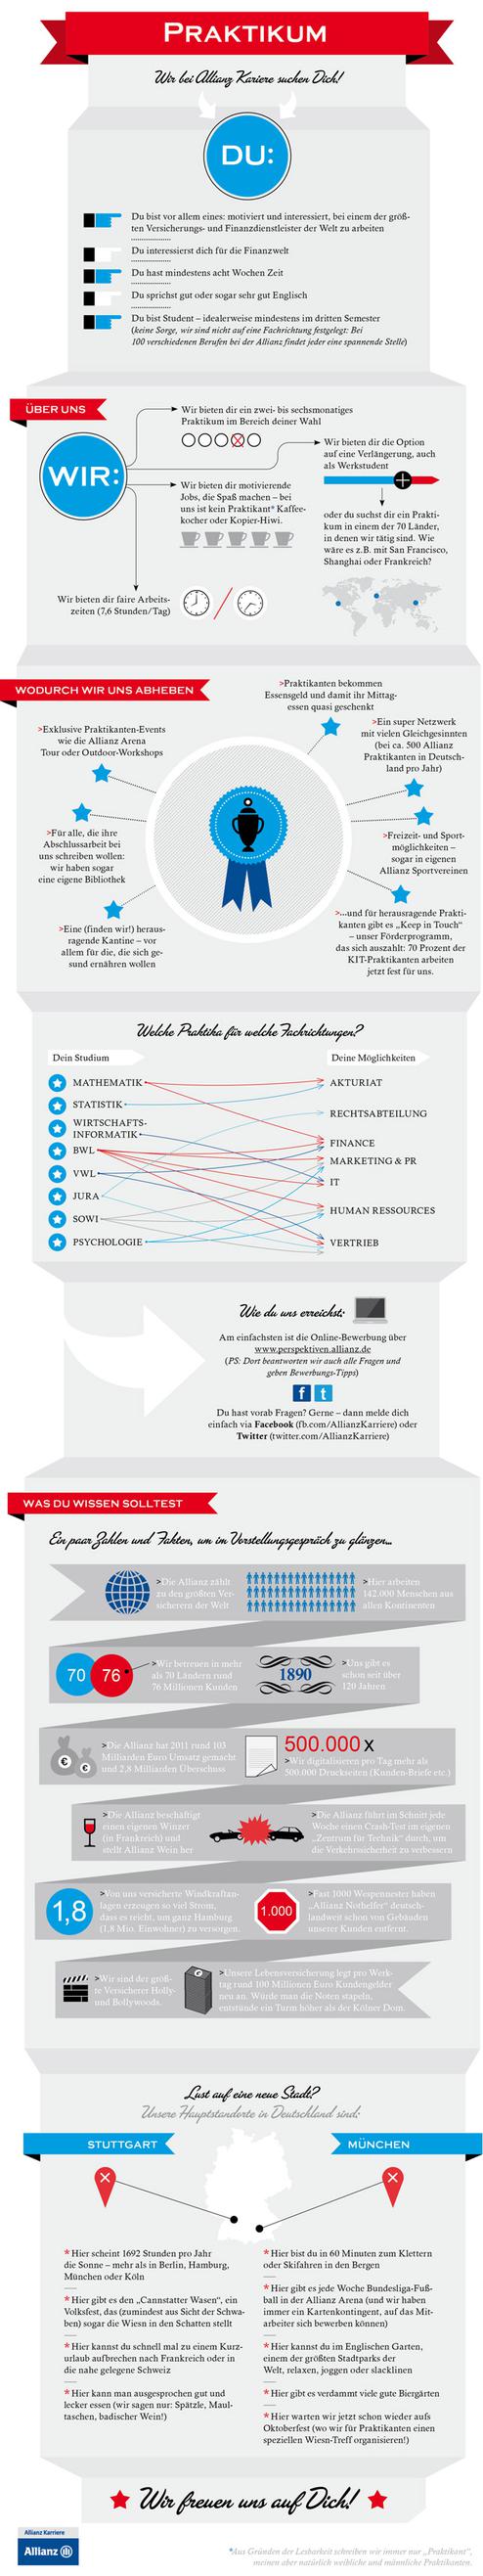 Ein  Praktikum-Stellenangebot im Gewand einer Infografik (Bild: Allianz)